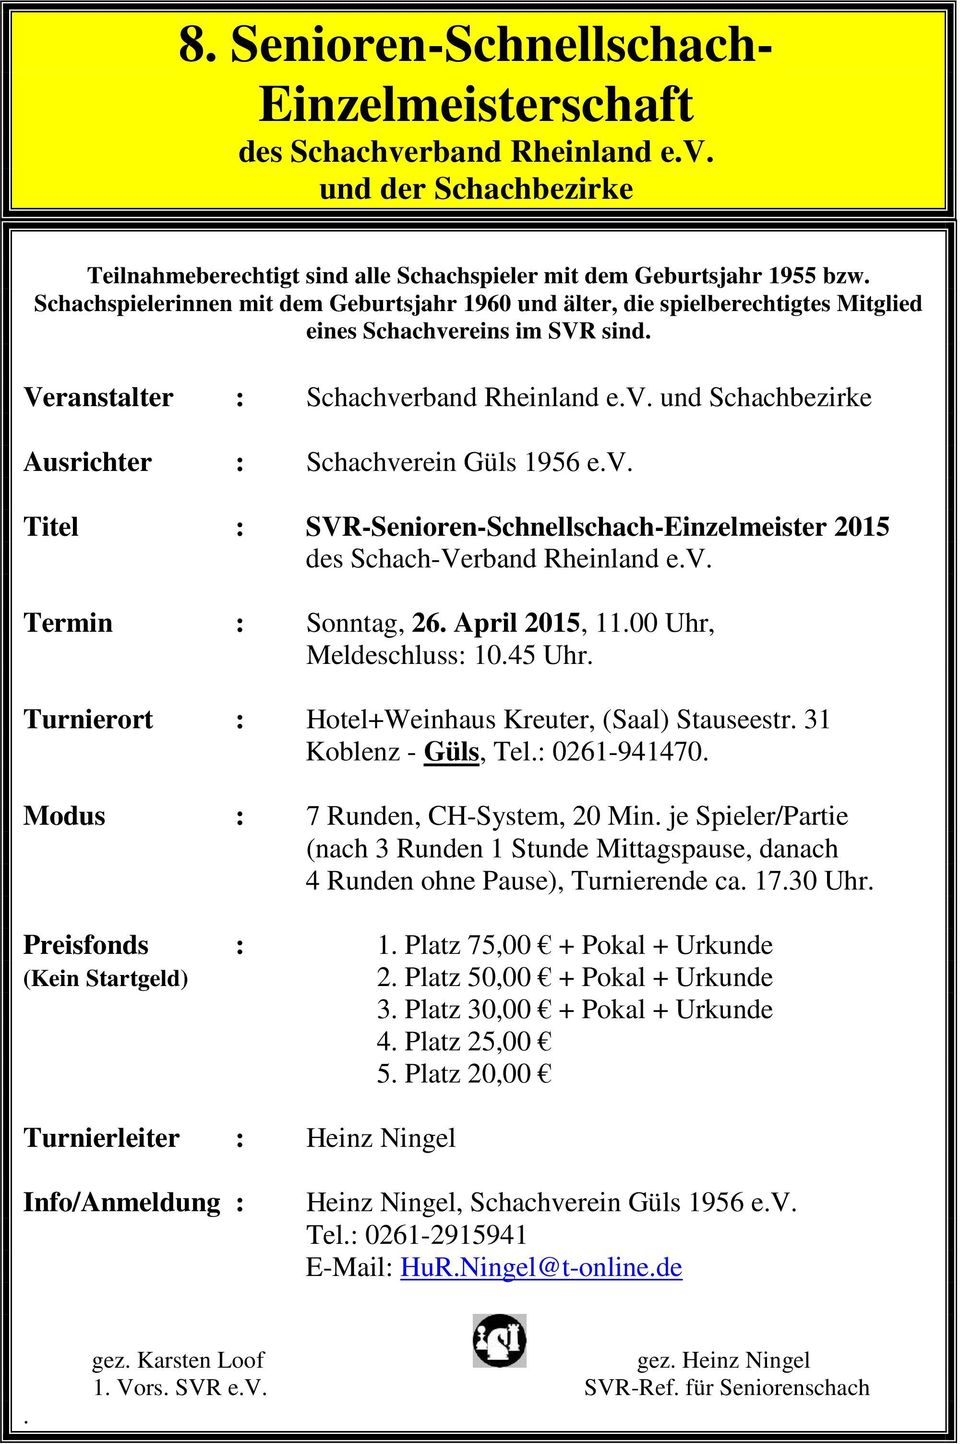 v. Titel : SVR-Senioren-Schnellschach-Einzelmeister 2015 des Schach-Verband Rheinland e.v. Termin : Sonntag, 26. April 2015, 11.00 Uhr, Meldeschluss: 10.45 Uhr.